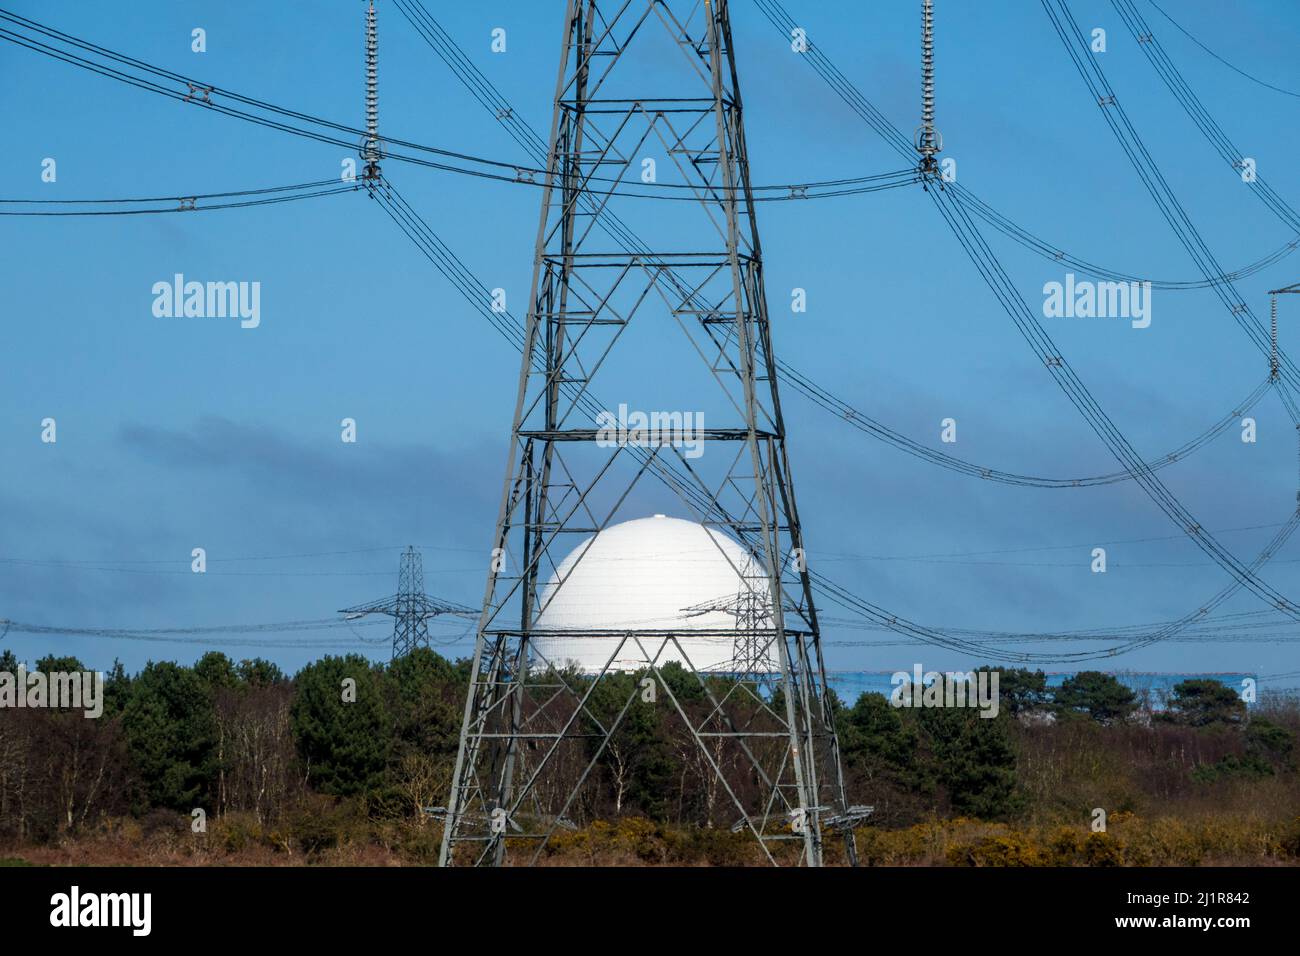 Le dôme blanc de la centrale nucléaire de Sizewell vu à travers le cadre métallique d'un pylône Banque D'Images